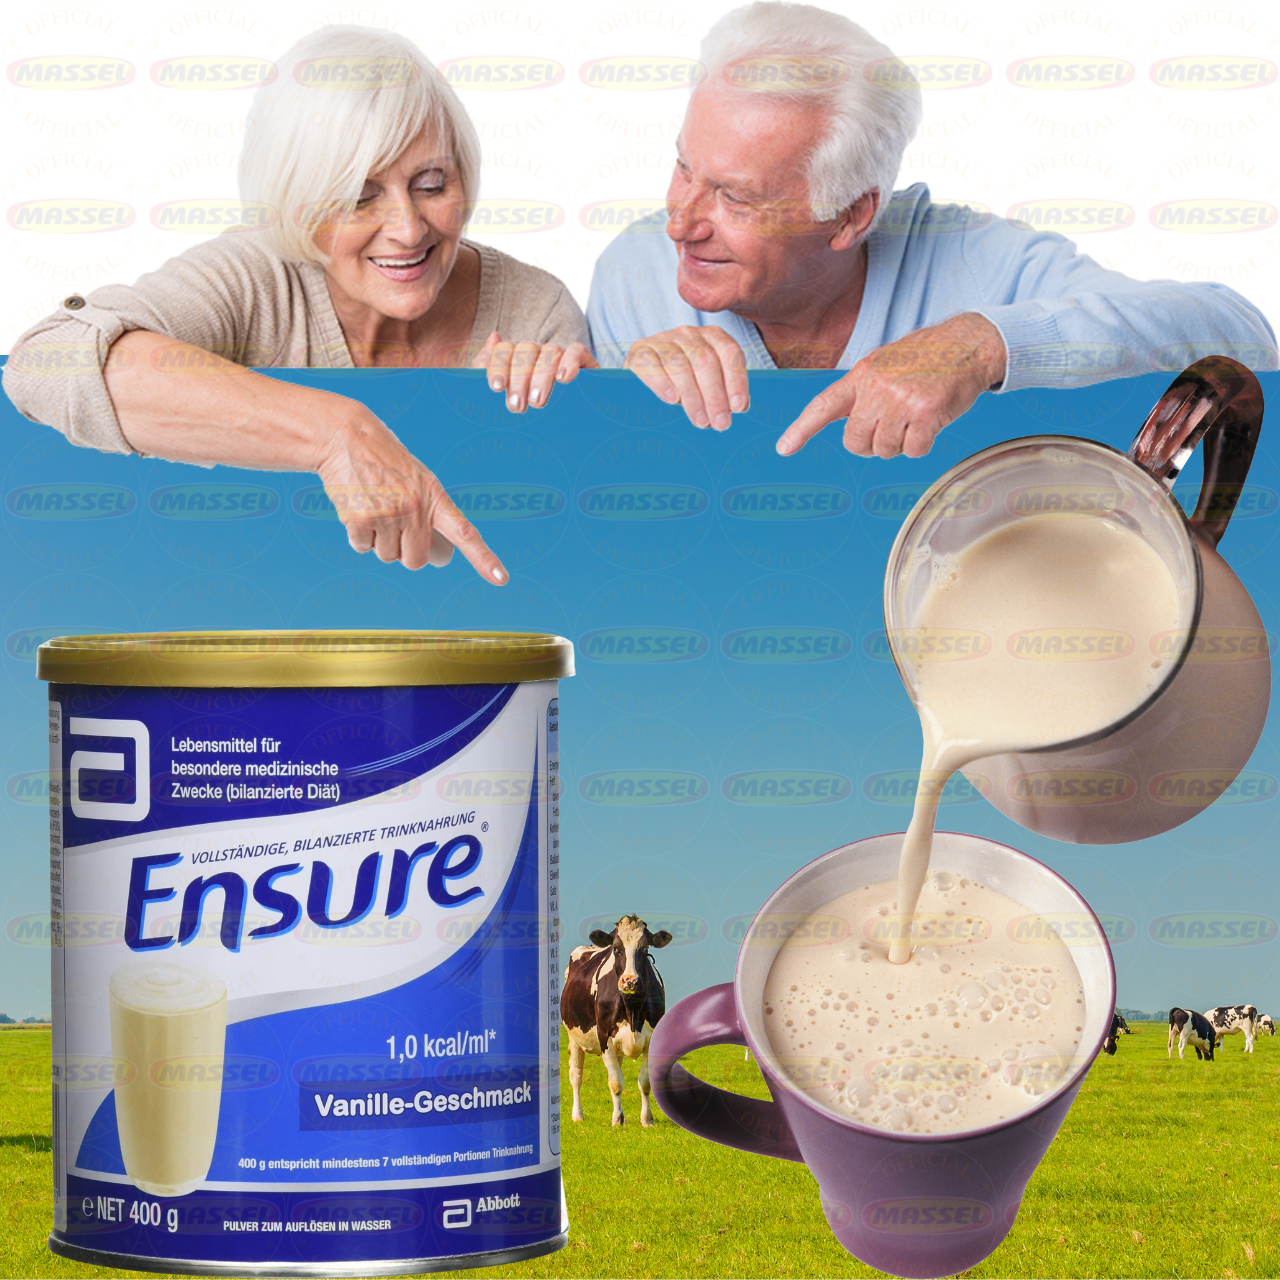 Ensure Đức cho người lớn, người ốm yếu, suy dinh dưỡng Ensure Vanille Geschmask - Cung cấp dinh dưỡng hồi phục sức khỏe - Massel Official